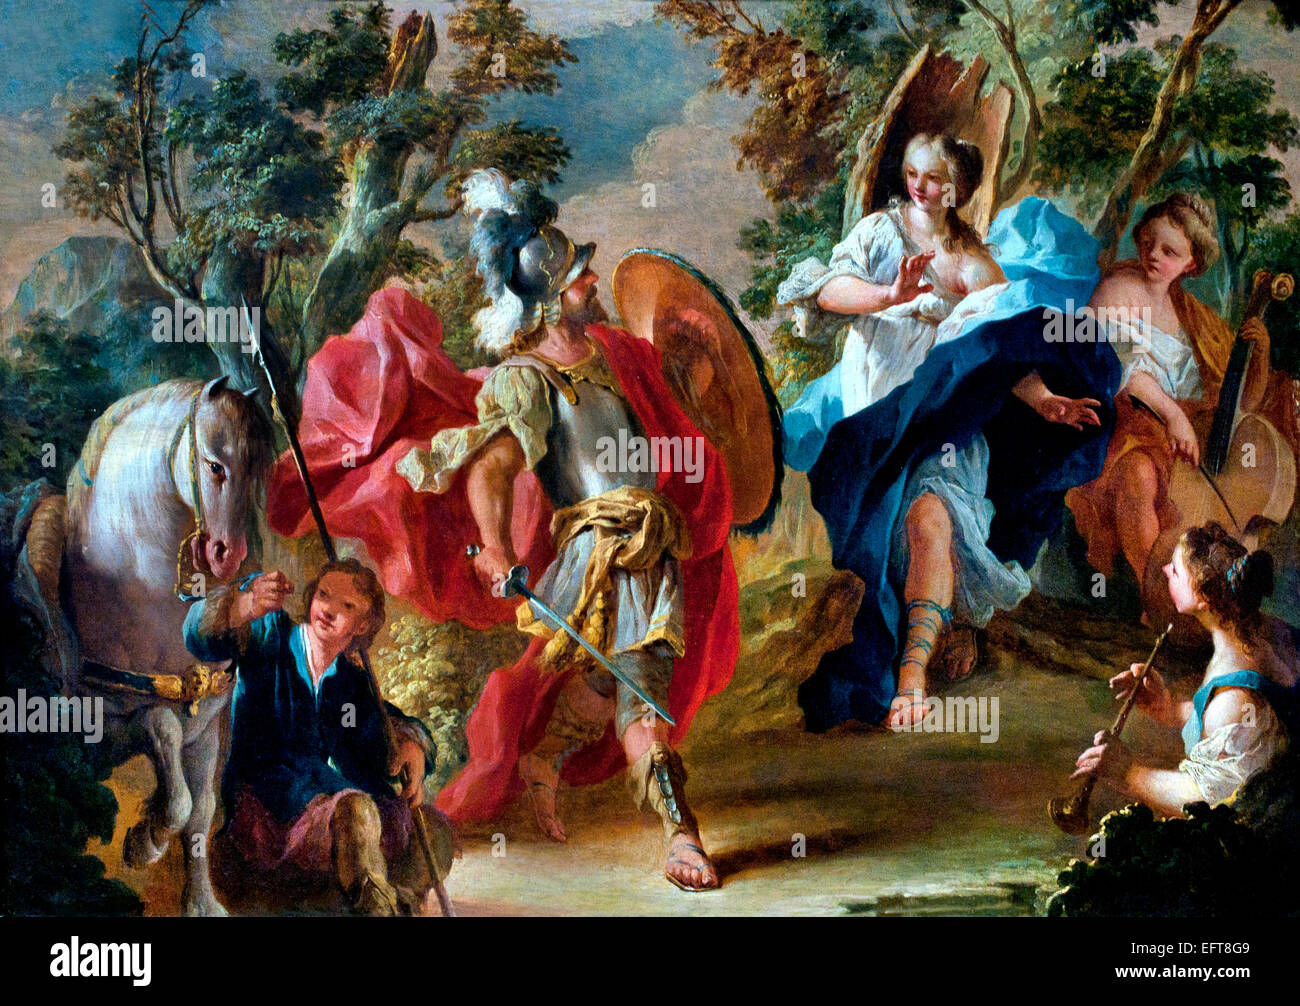 Rinaldo et Armida dans la forêt magique de 1734 Anton Kern (1710-1747) Allemand Allemagne ( l'histoire d'Armida, une magicienne Sarrasine et Rinaldo, un soldat dans la première croisade ) Banque D'Images